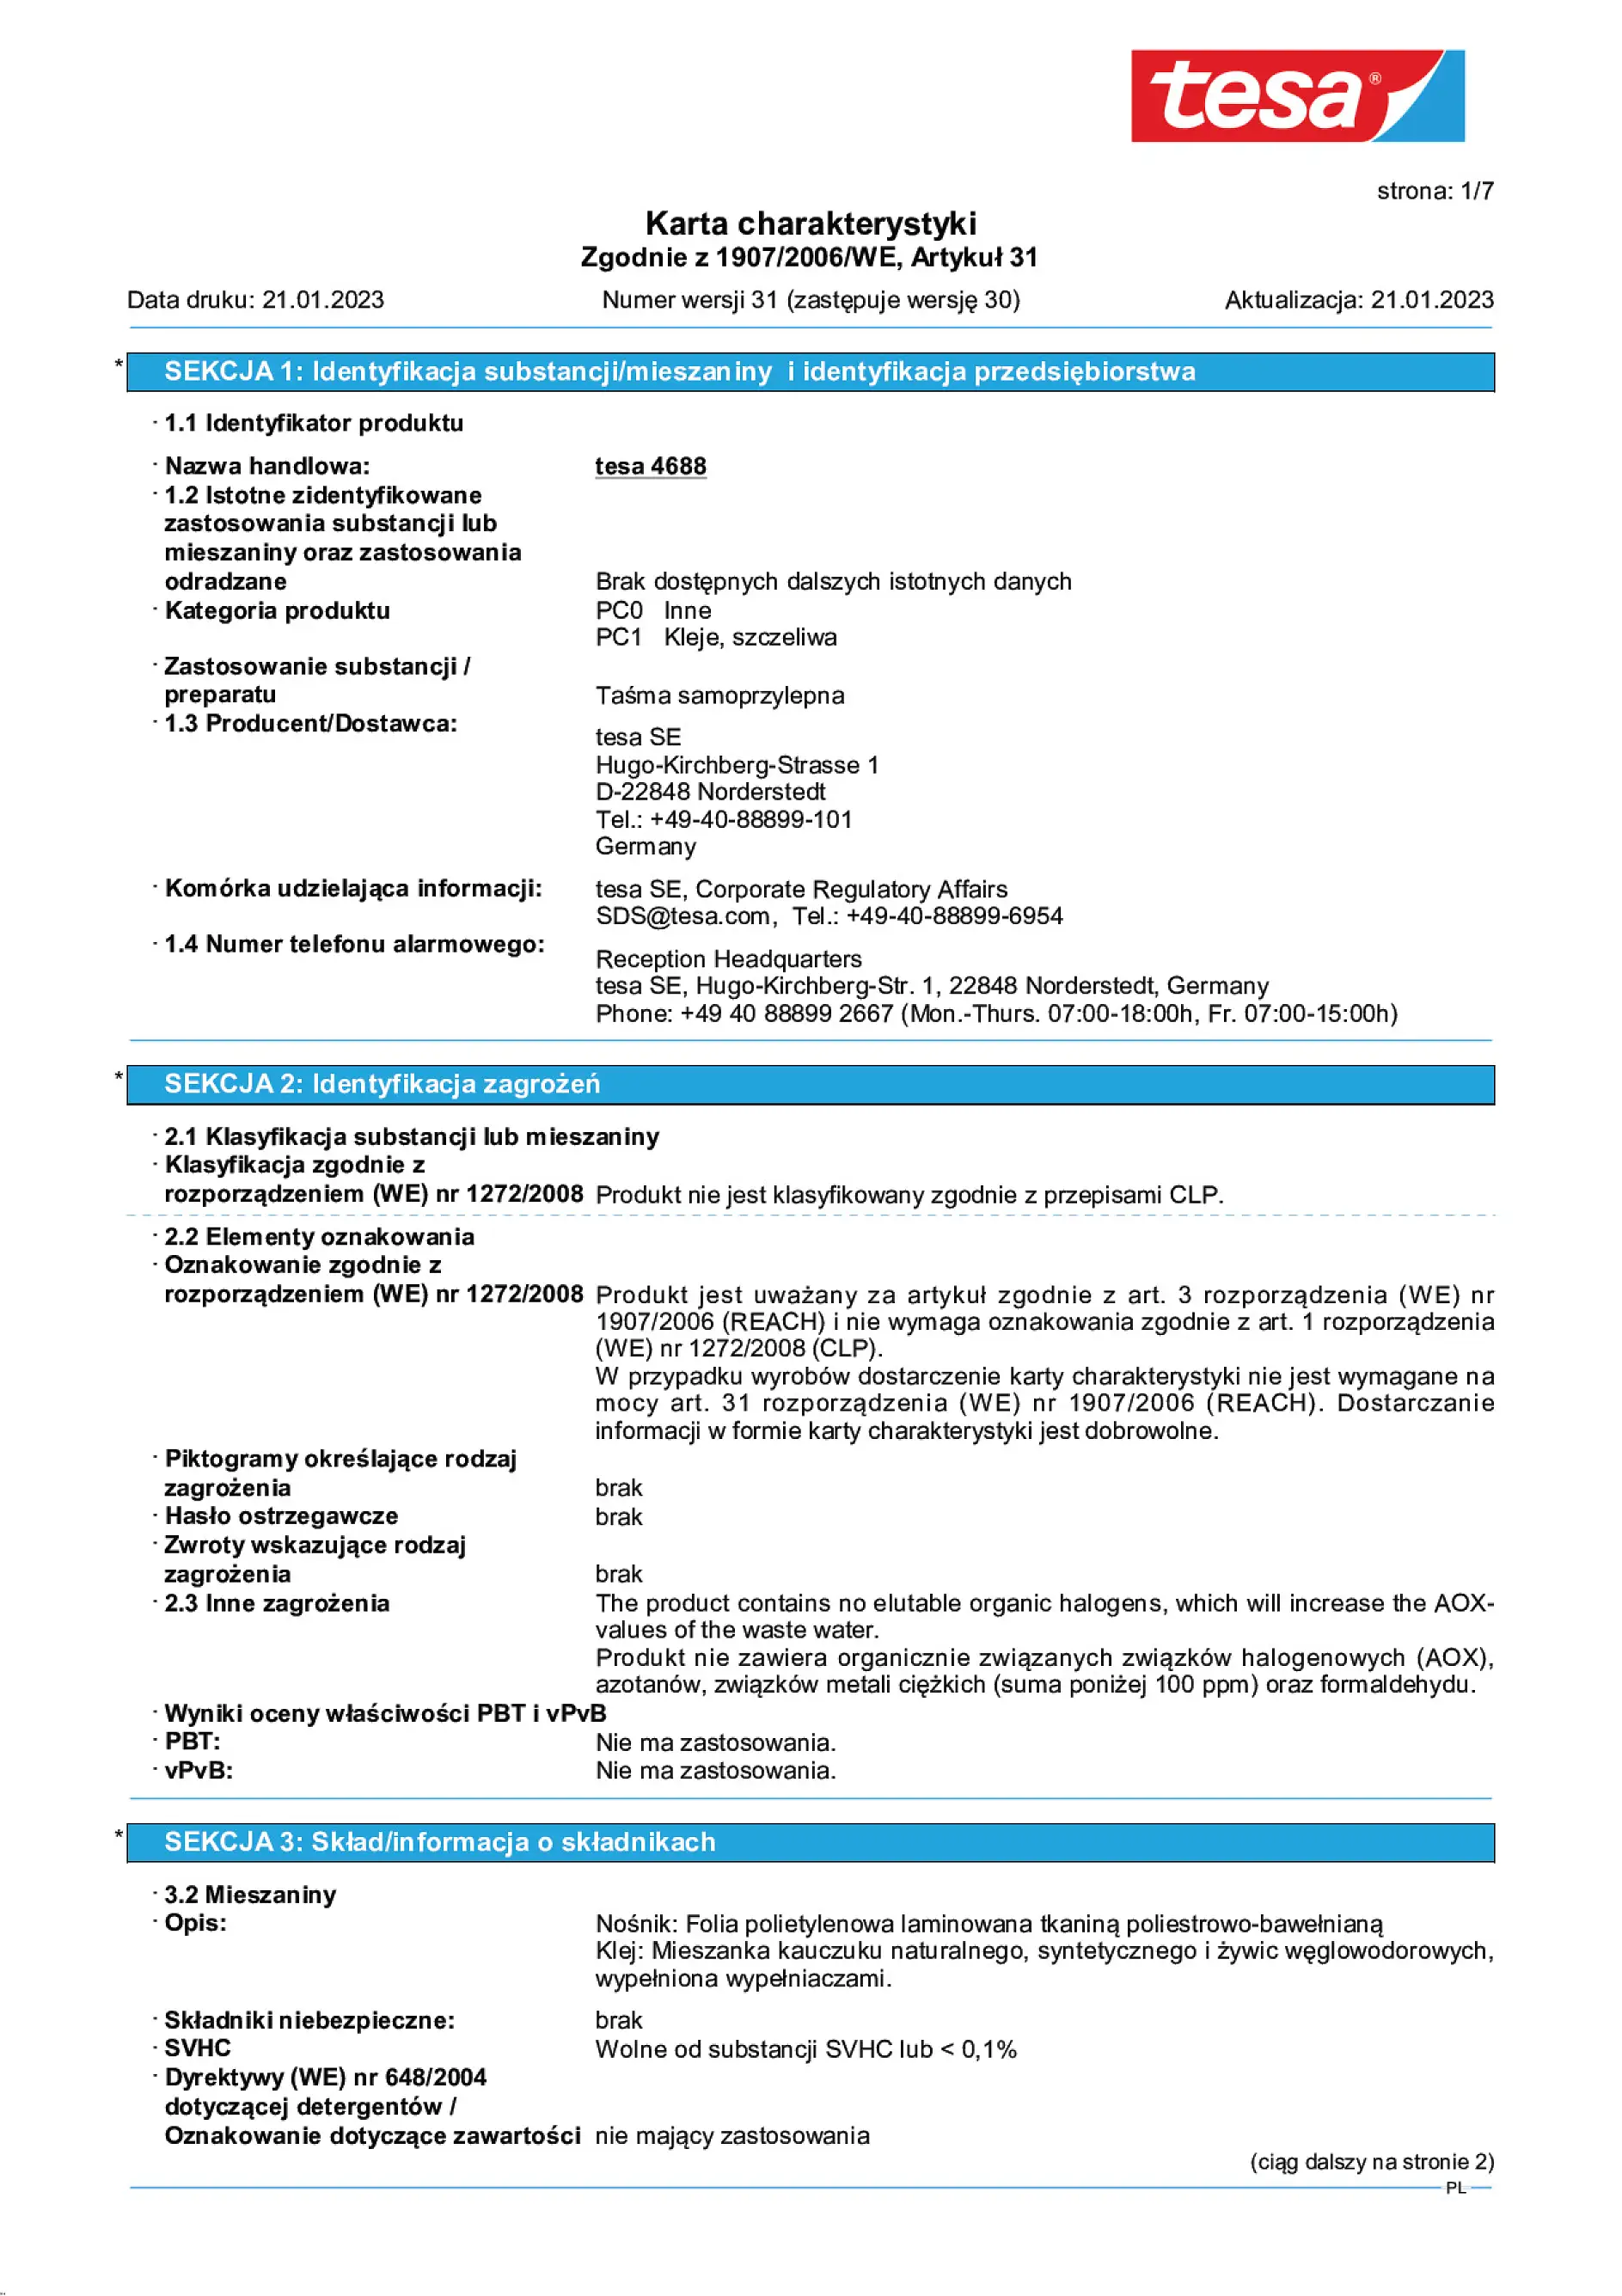 Safety data sheet_tesa® Professional 04688_pl-PL_v31